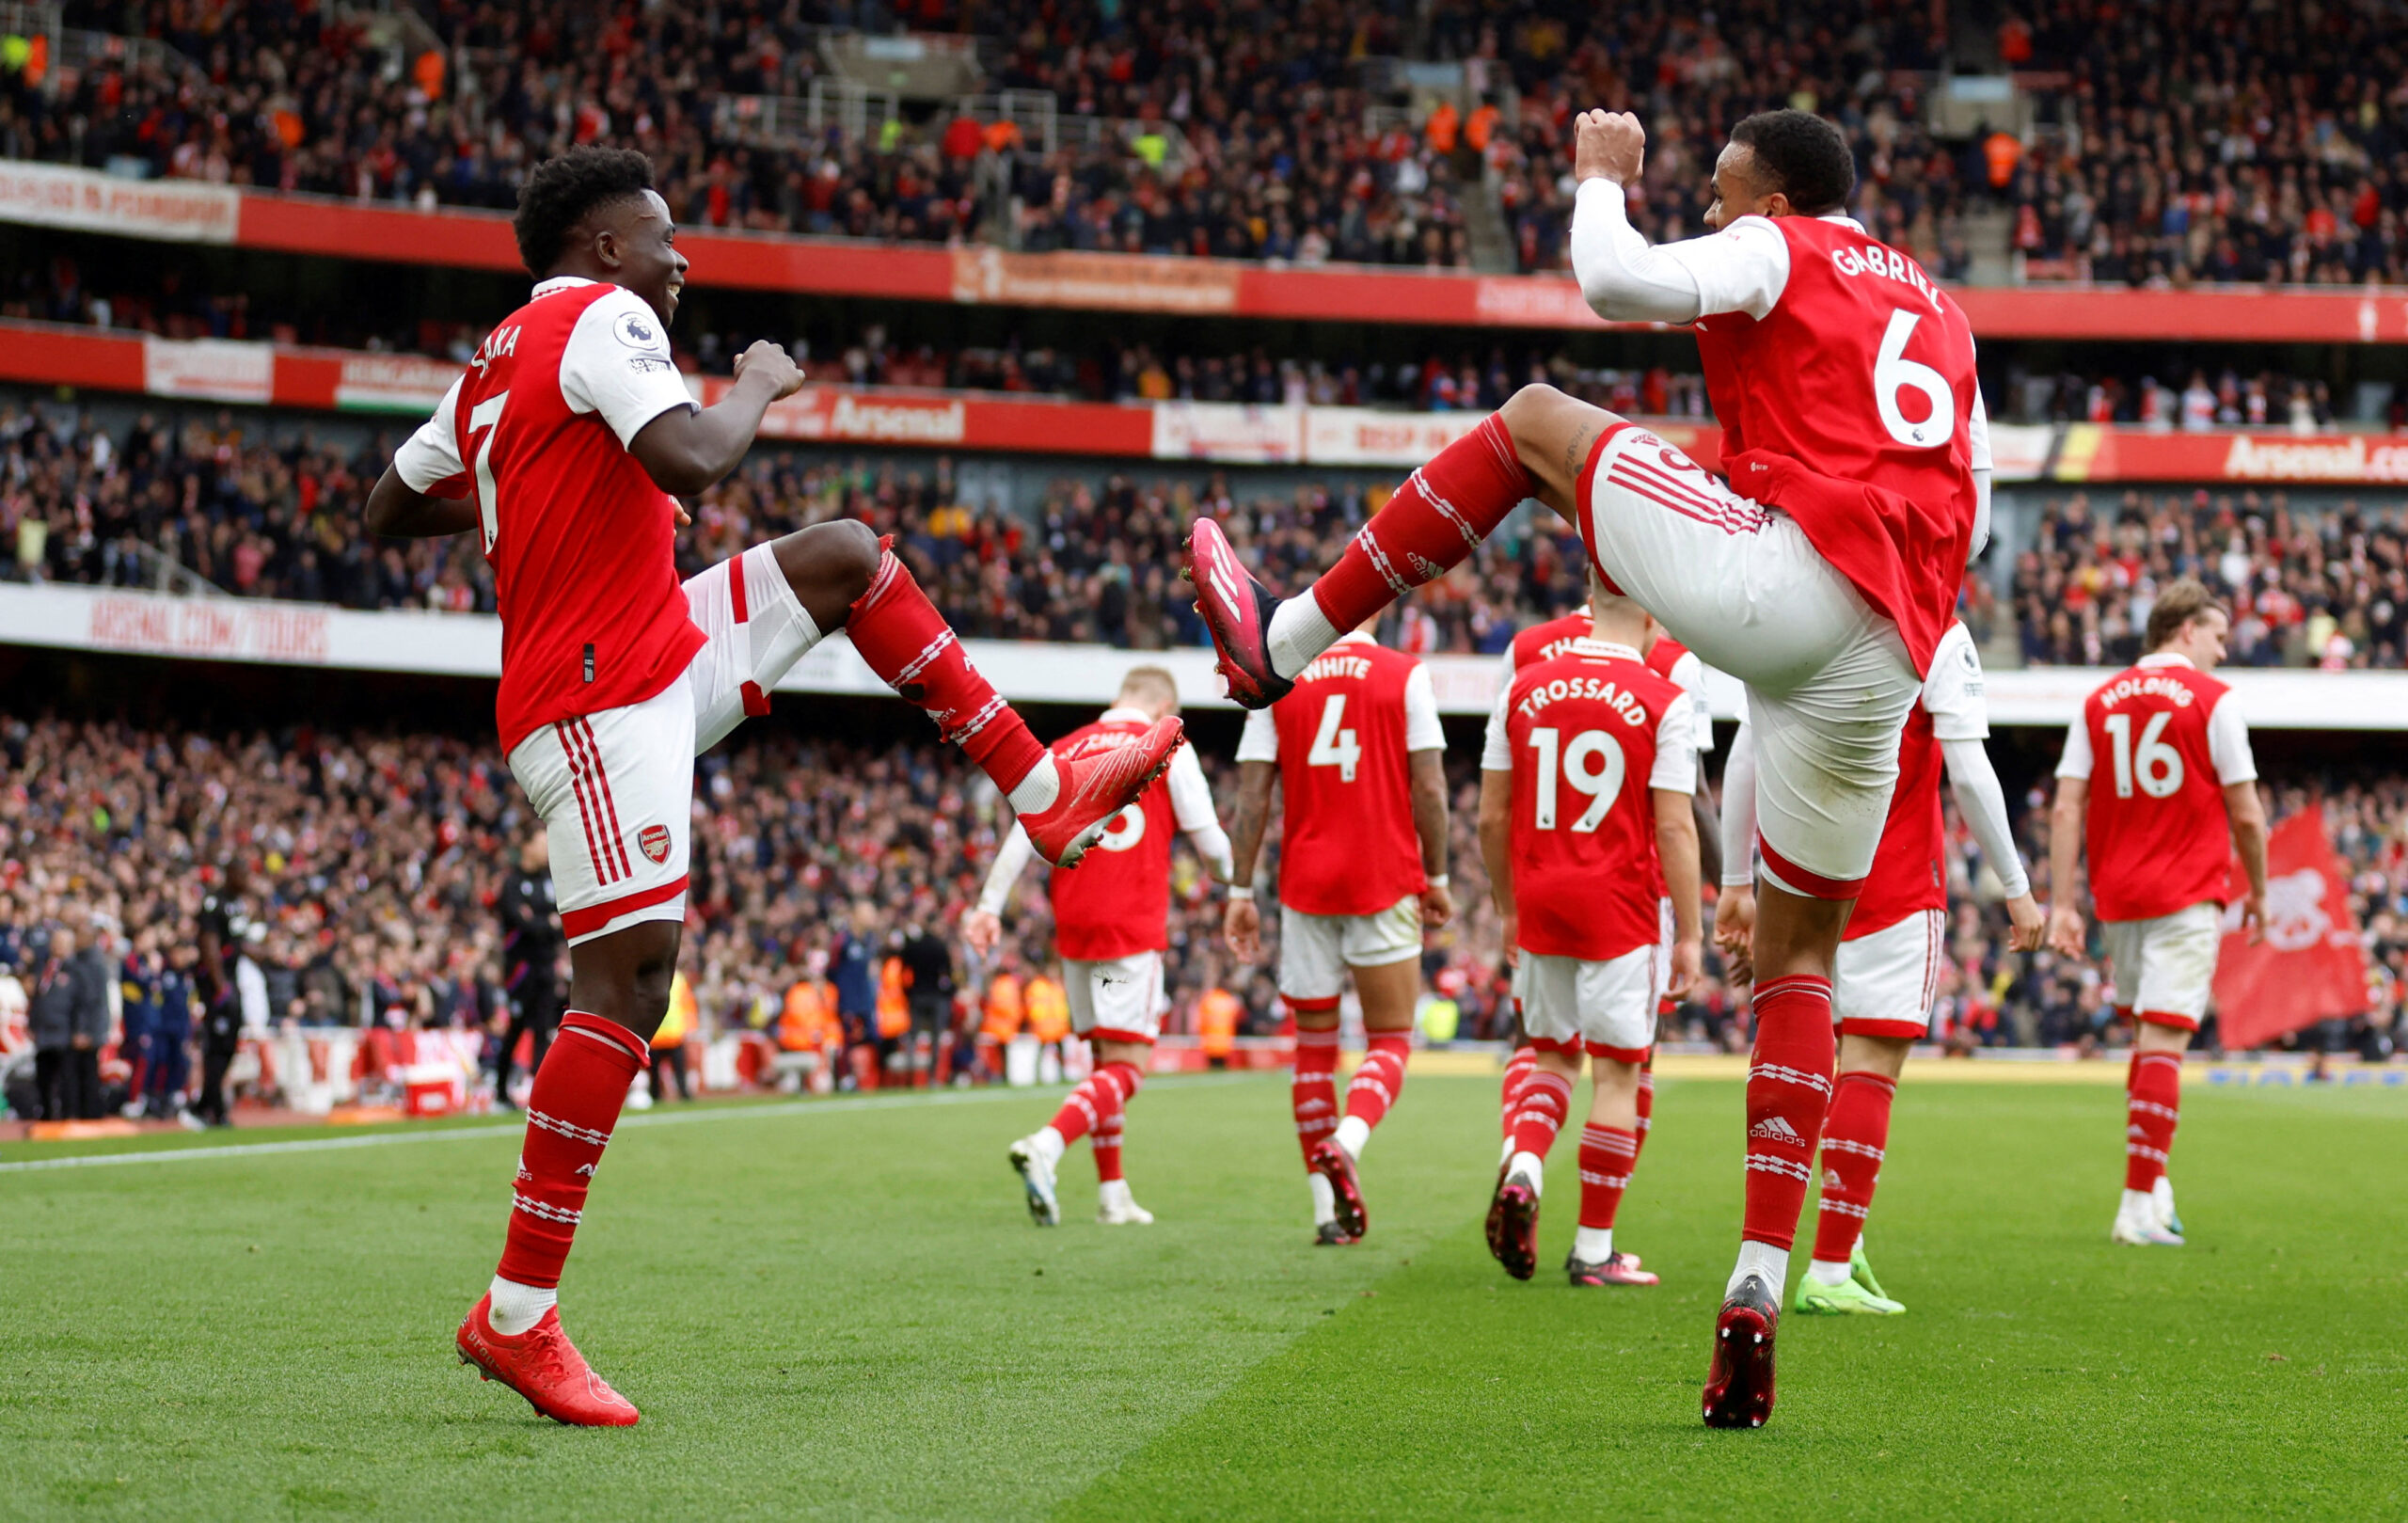 El Arsenal todavía puede ganar el título de la Premier League, afirma Paul Merson